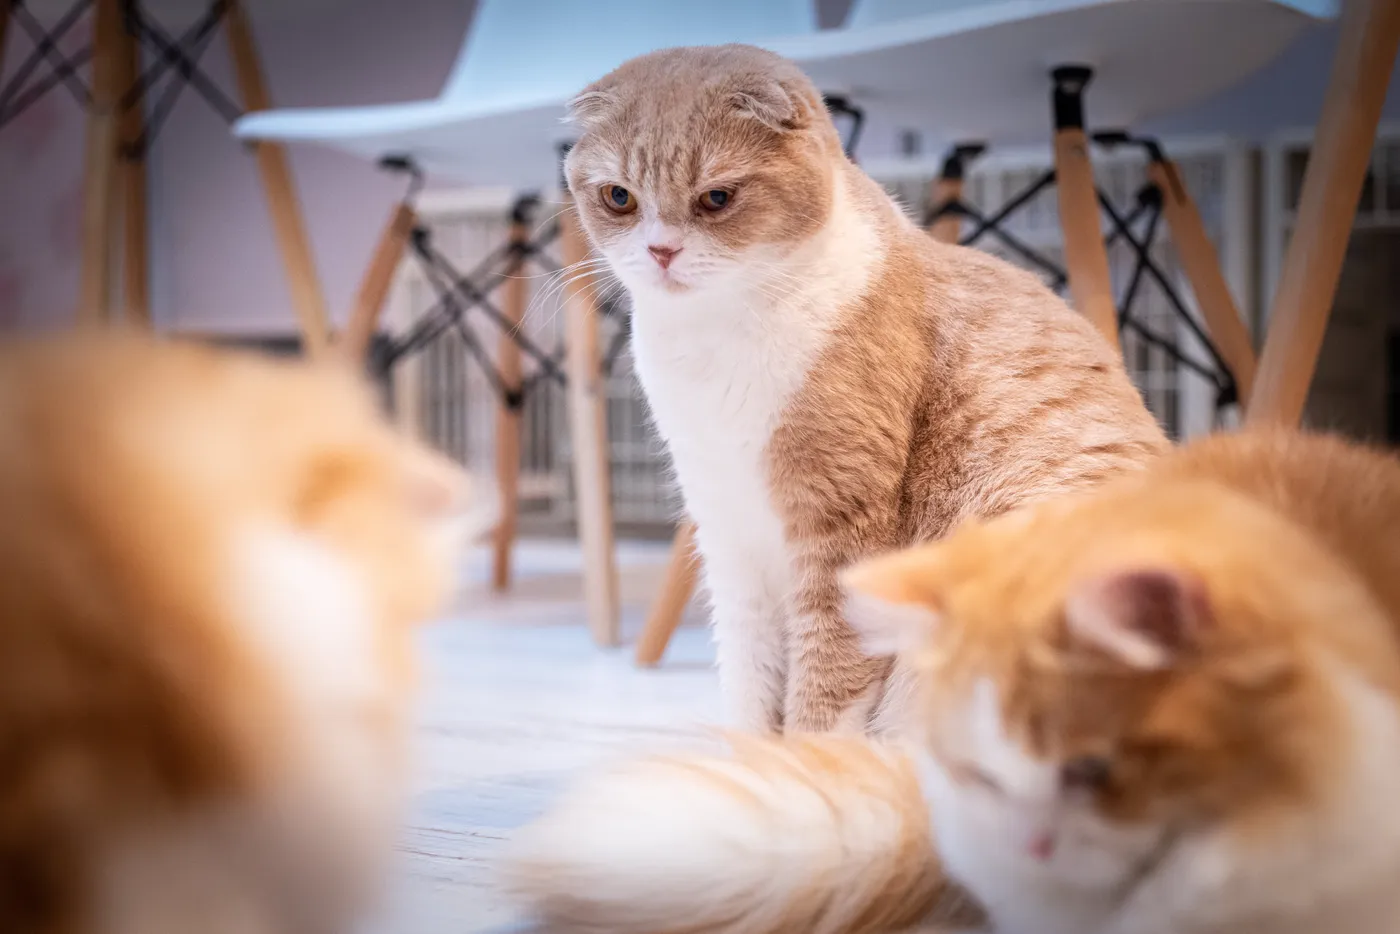 【広島県広島市の探偵のペット捜索】脱走した猫を３か月後に捕獲